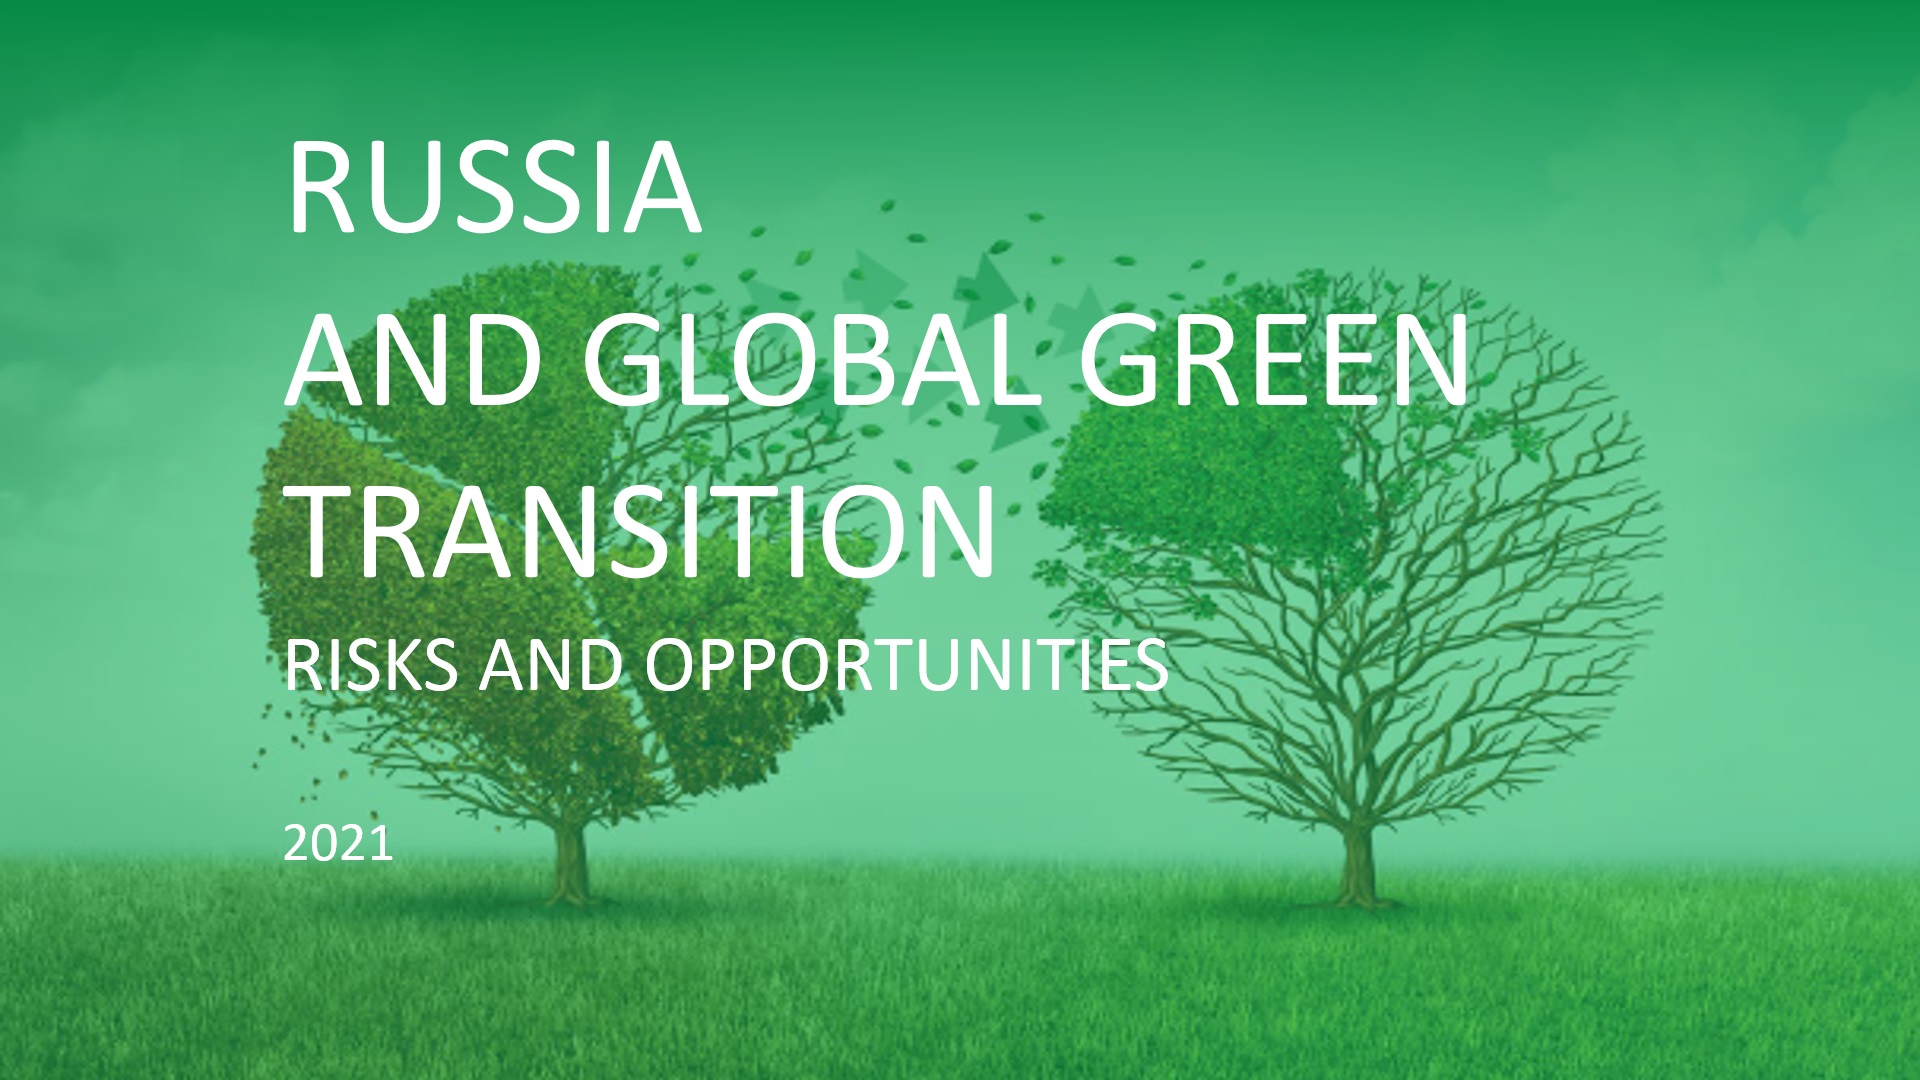 Опубликован доклад «Россия и глобальный зеленый переход: риски и возможности»